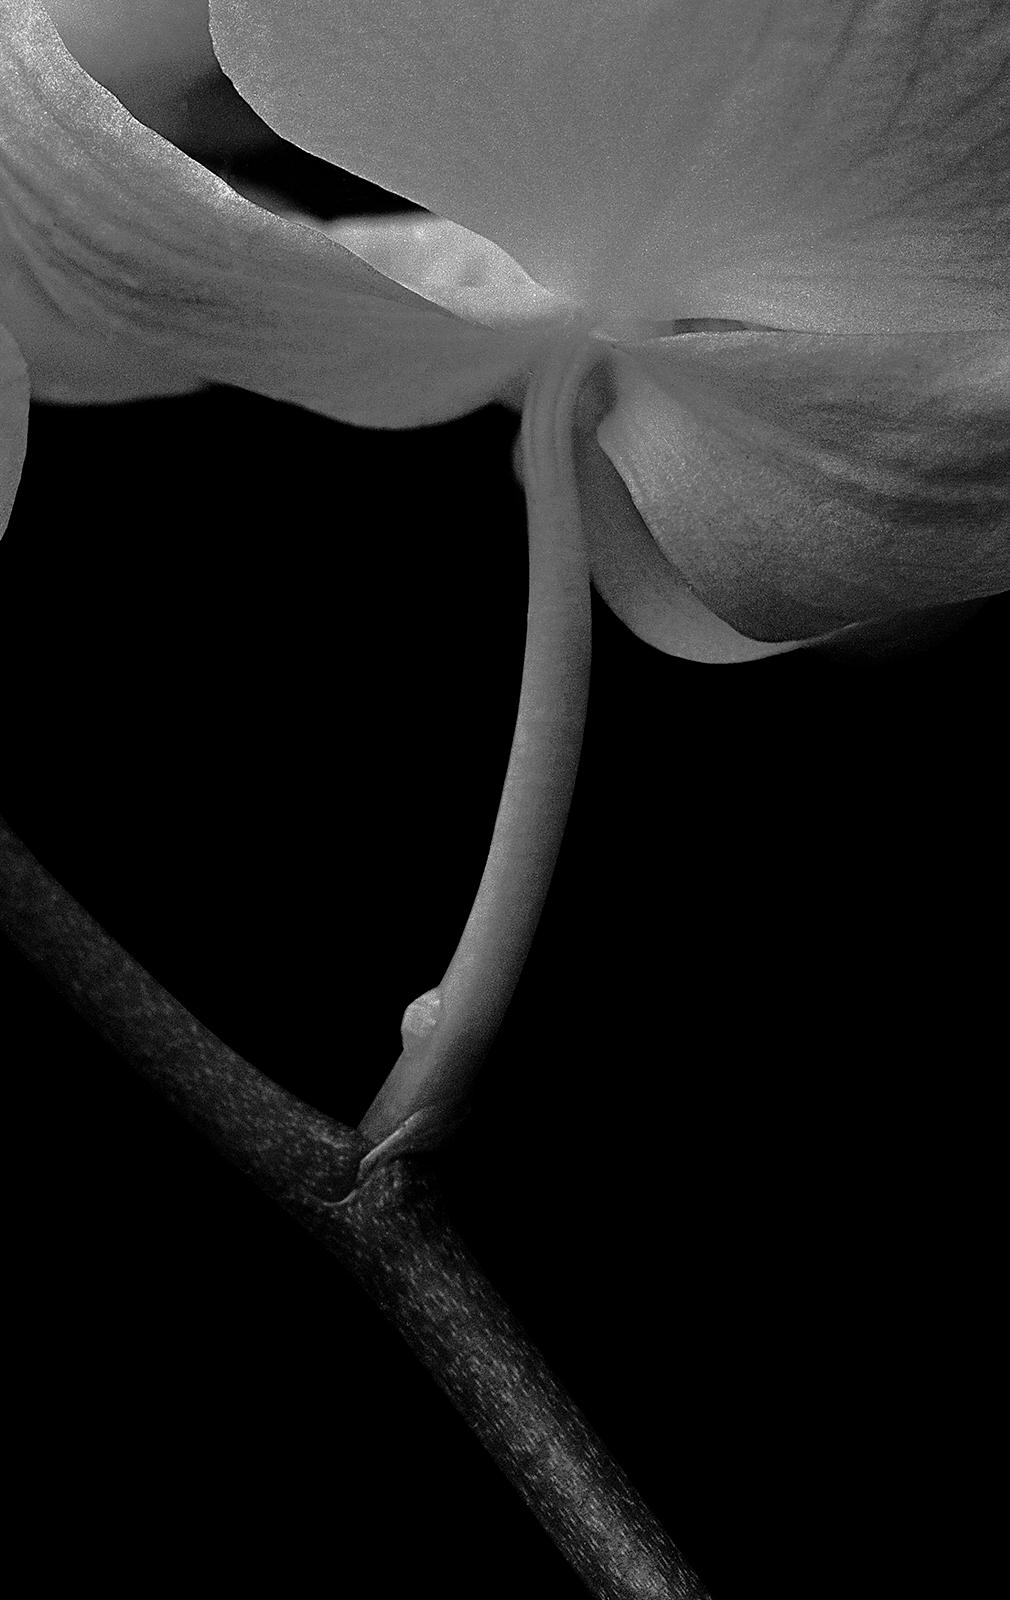 Orchid - Impression de nature en édition limitée signée, photo de nature noire, surdimensionnée - Contemporain Photograph par Ian Sanderson